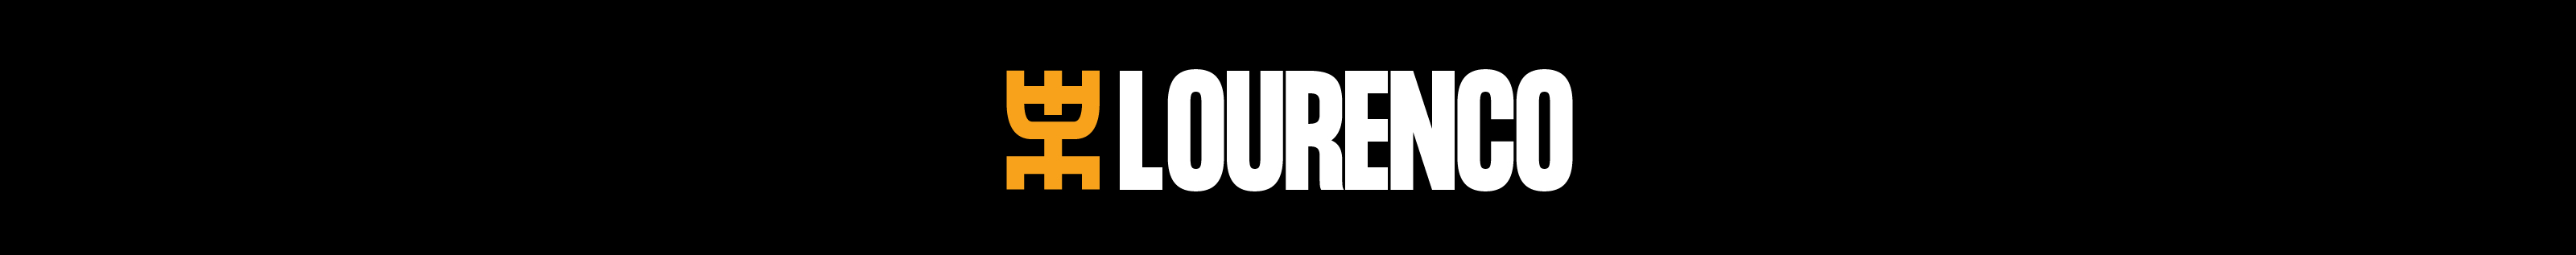 Lourenço Araújo's profile banner